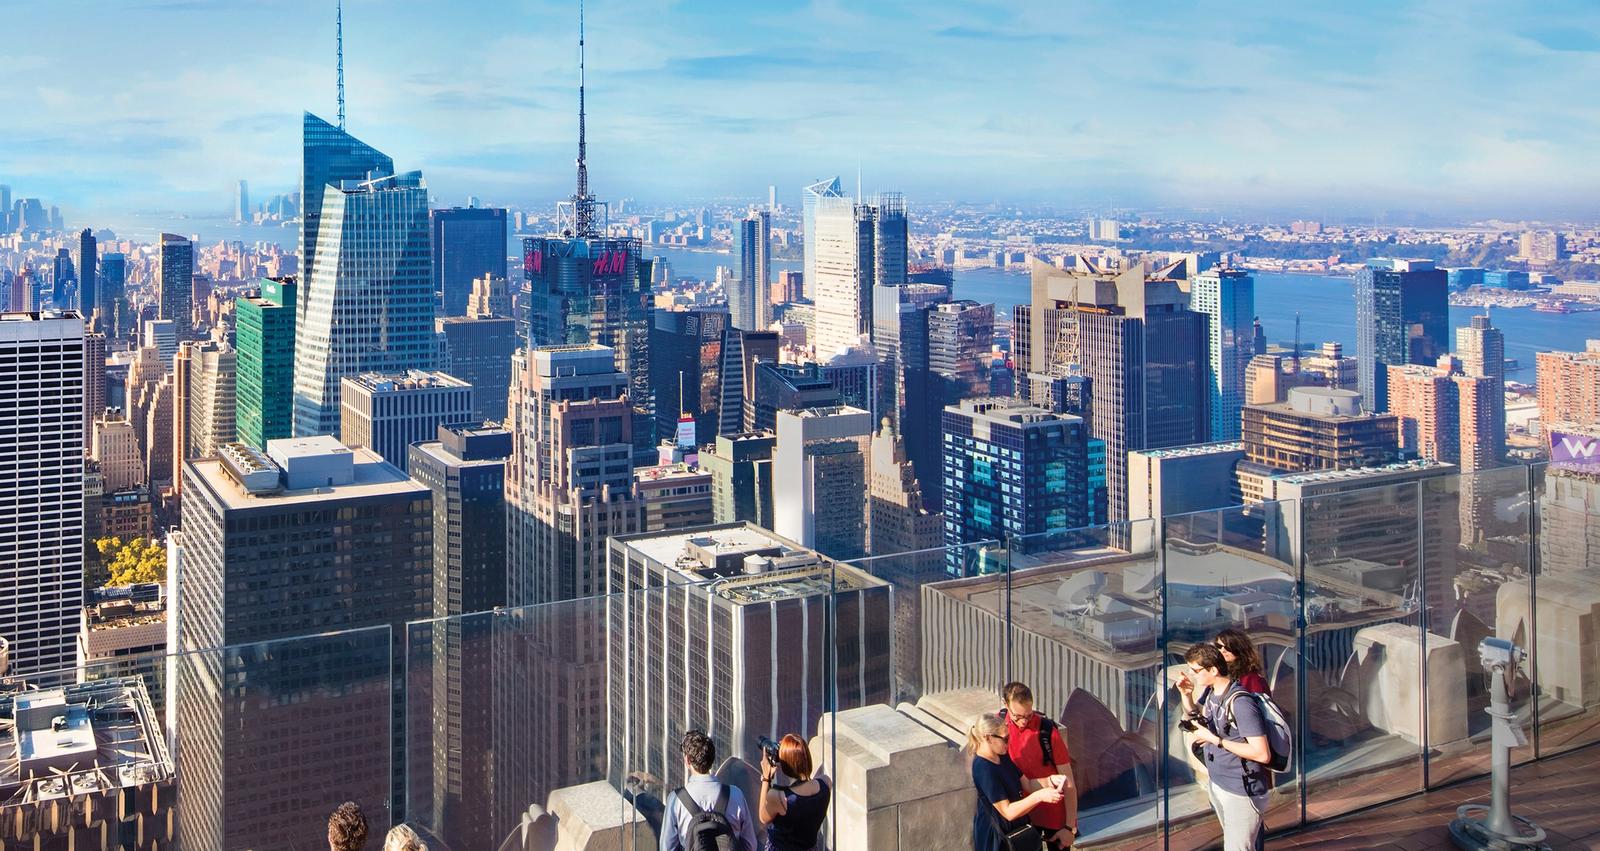 Vista di Midtown, Lower Manhattan e della città di NY dall’osservatorio Top of the Rock.